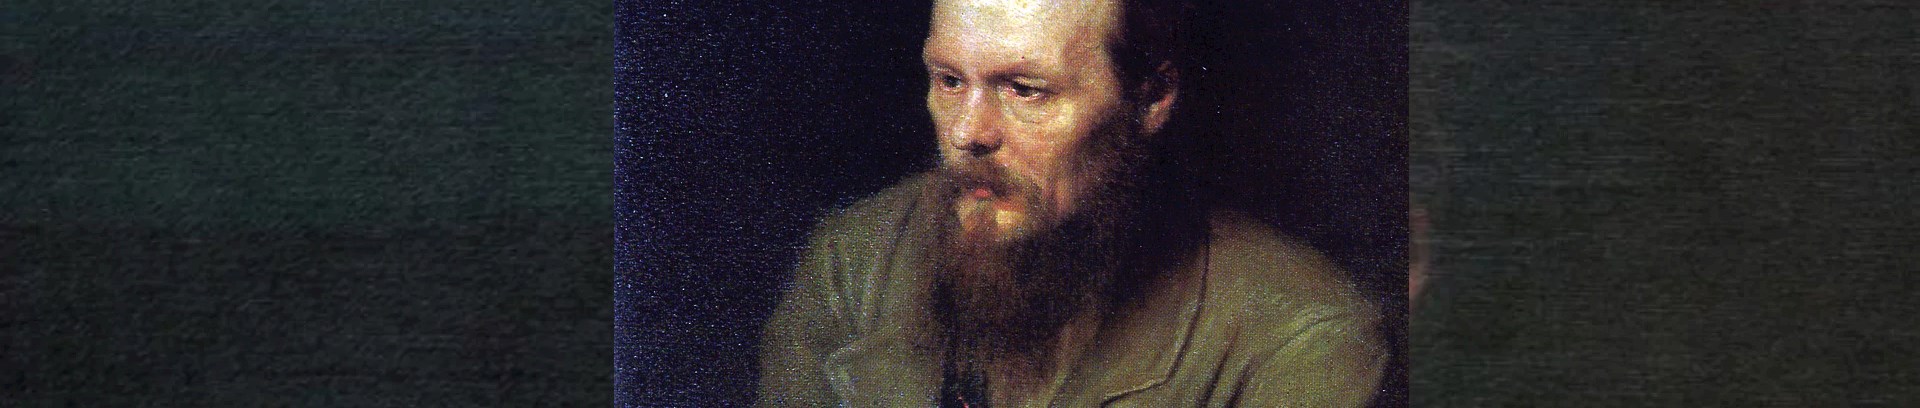 Detalje af maleri af den russiske forfatter Dostojevskij. 